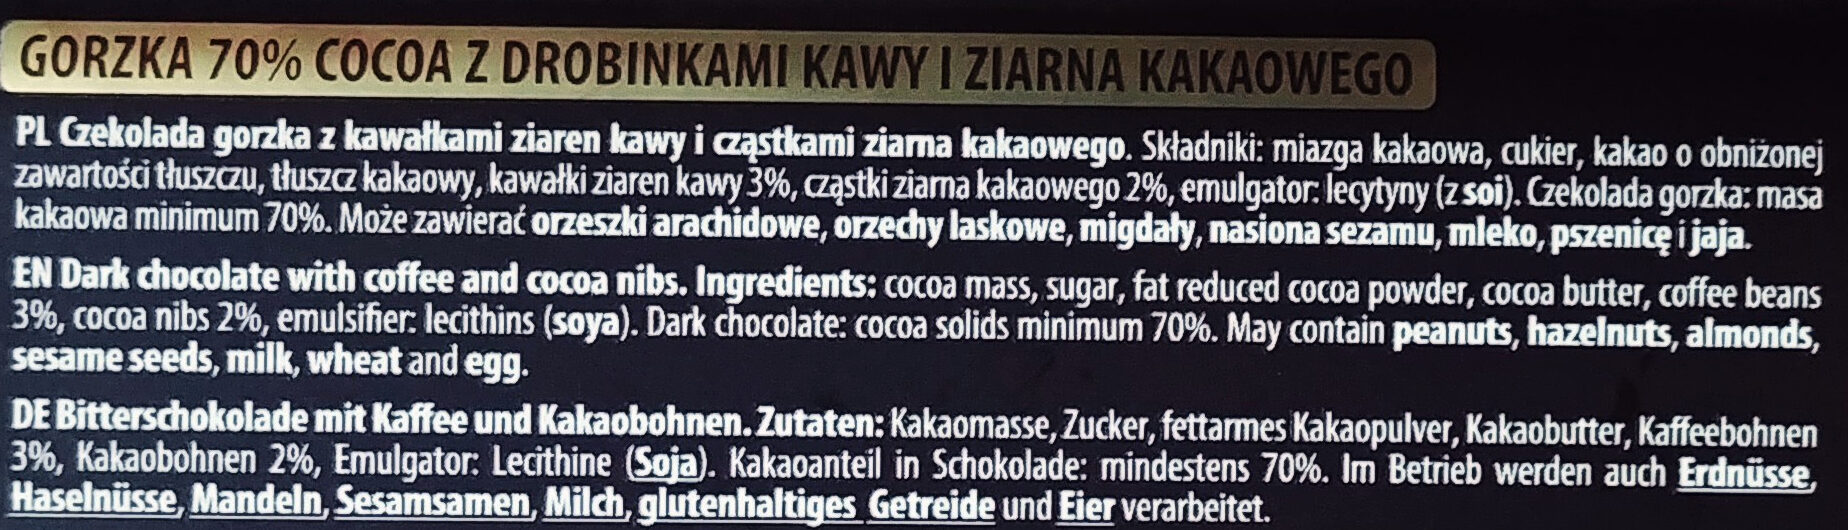 Czekolada gorzka 70% - Ingredients - pl